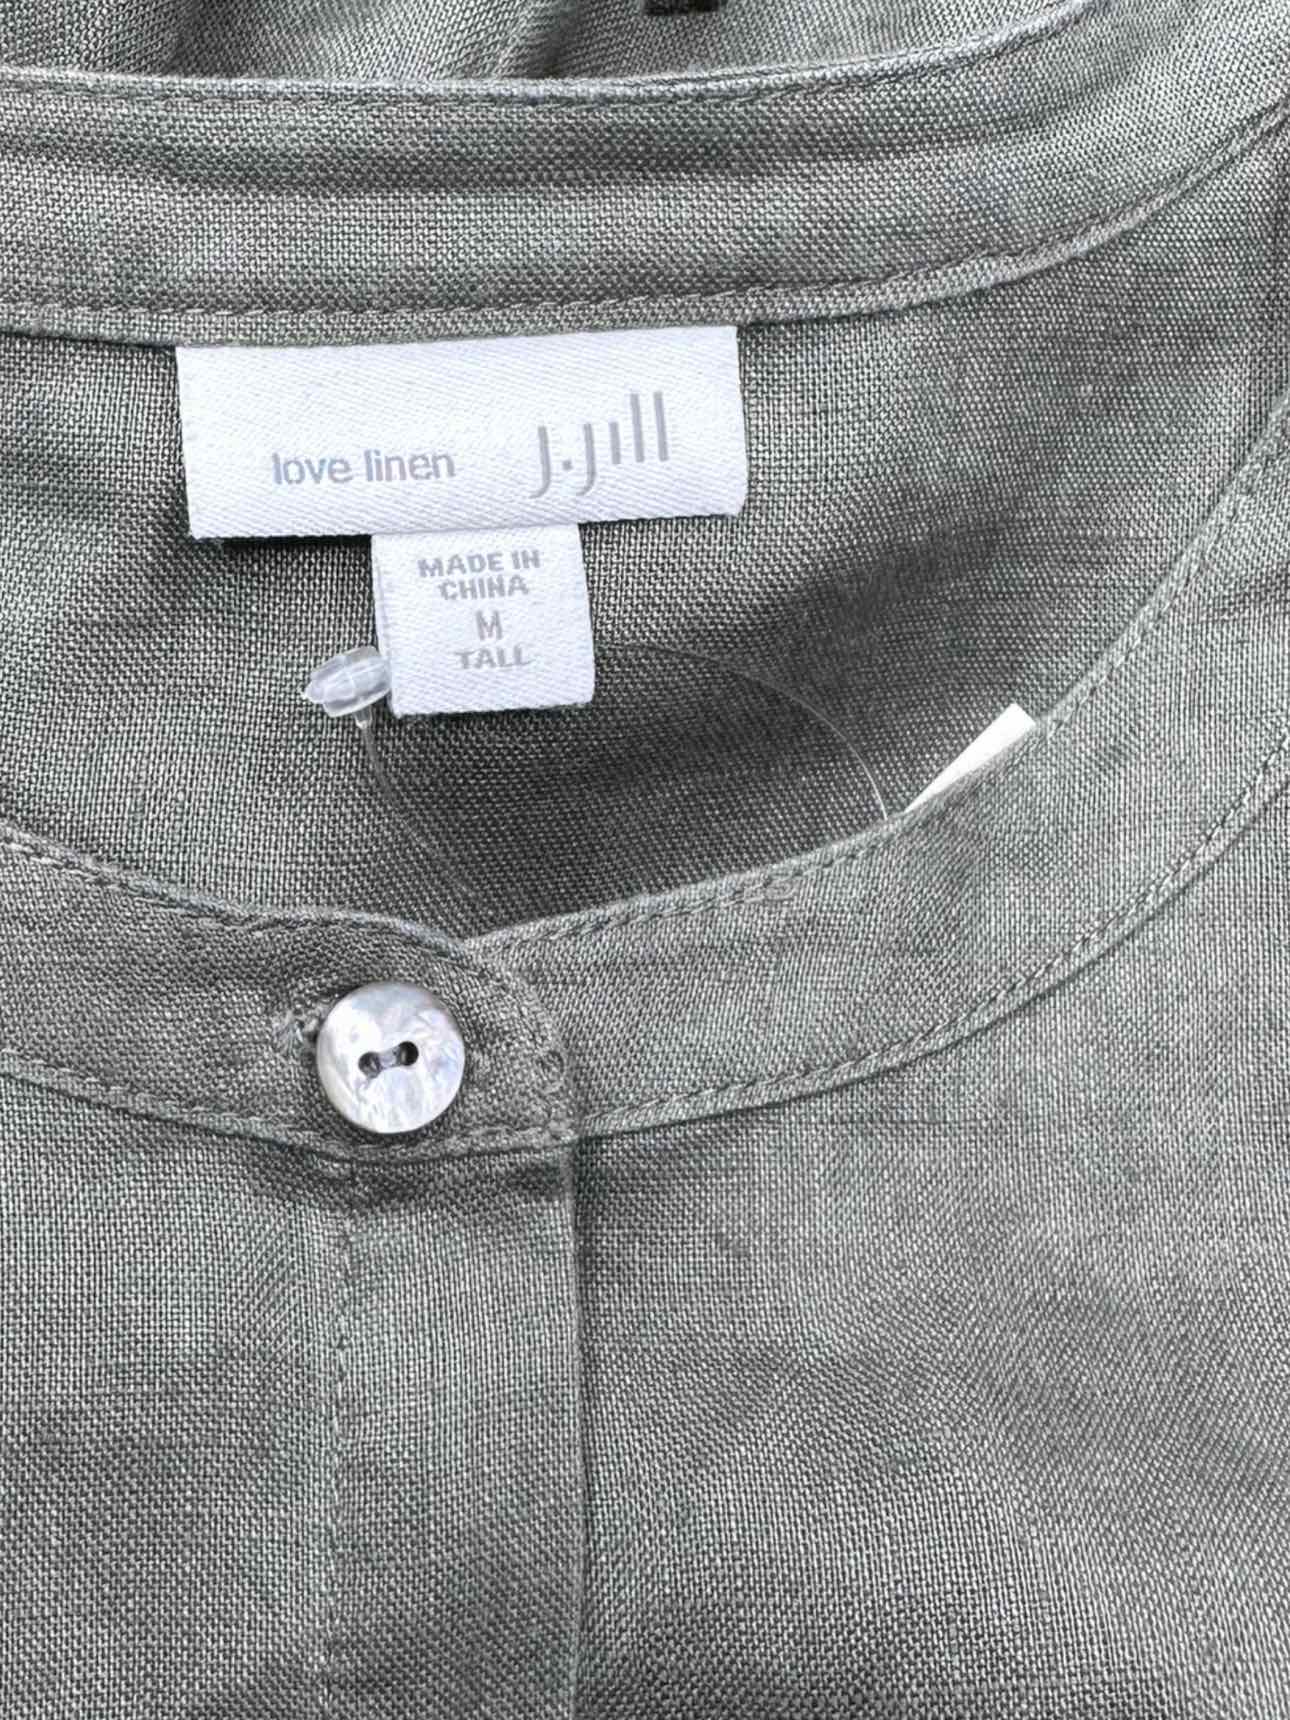 J. Jill Olive 100% Linen Button-Down Shirt Size M Tall